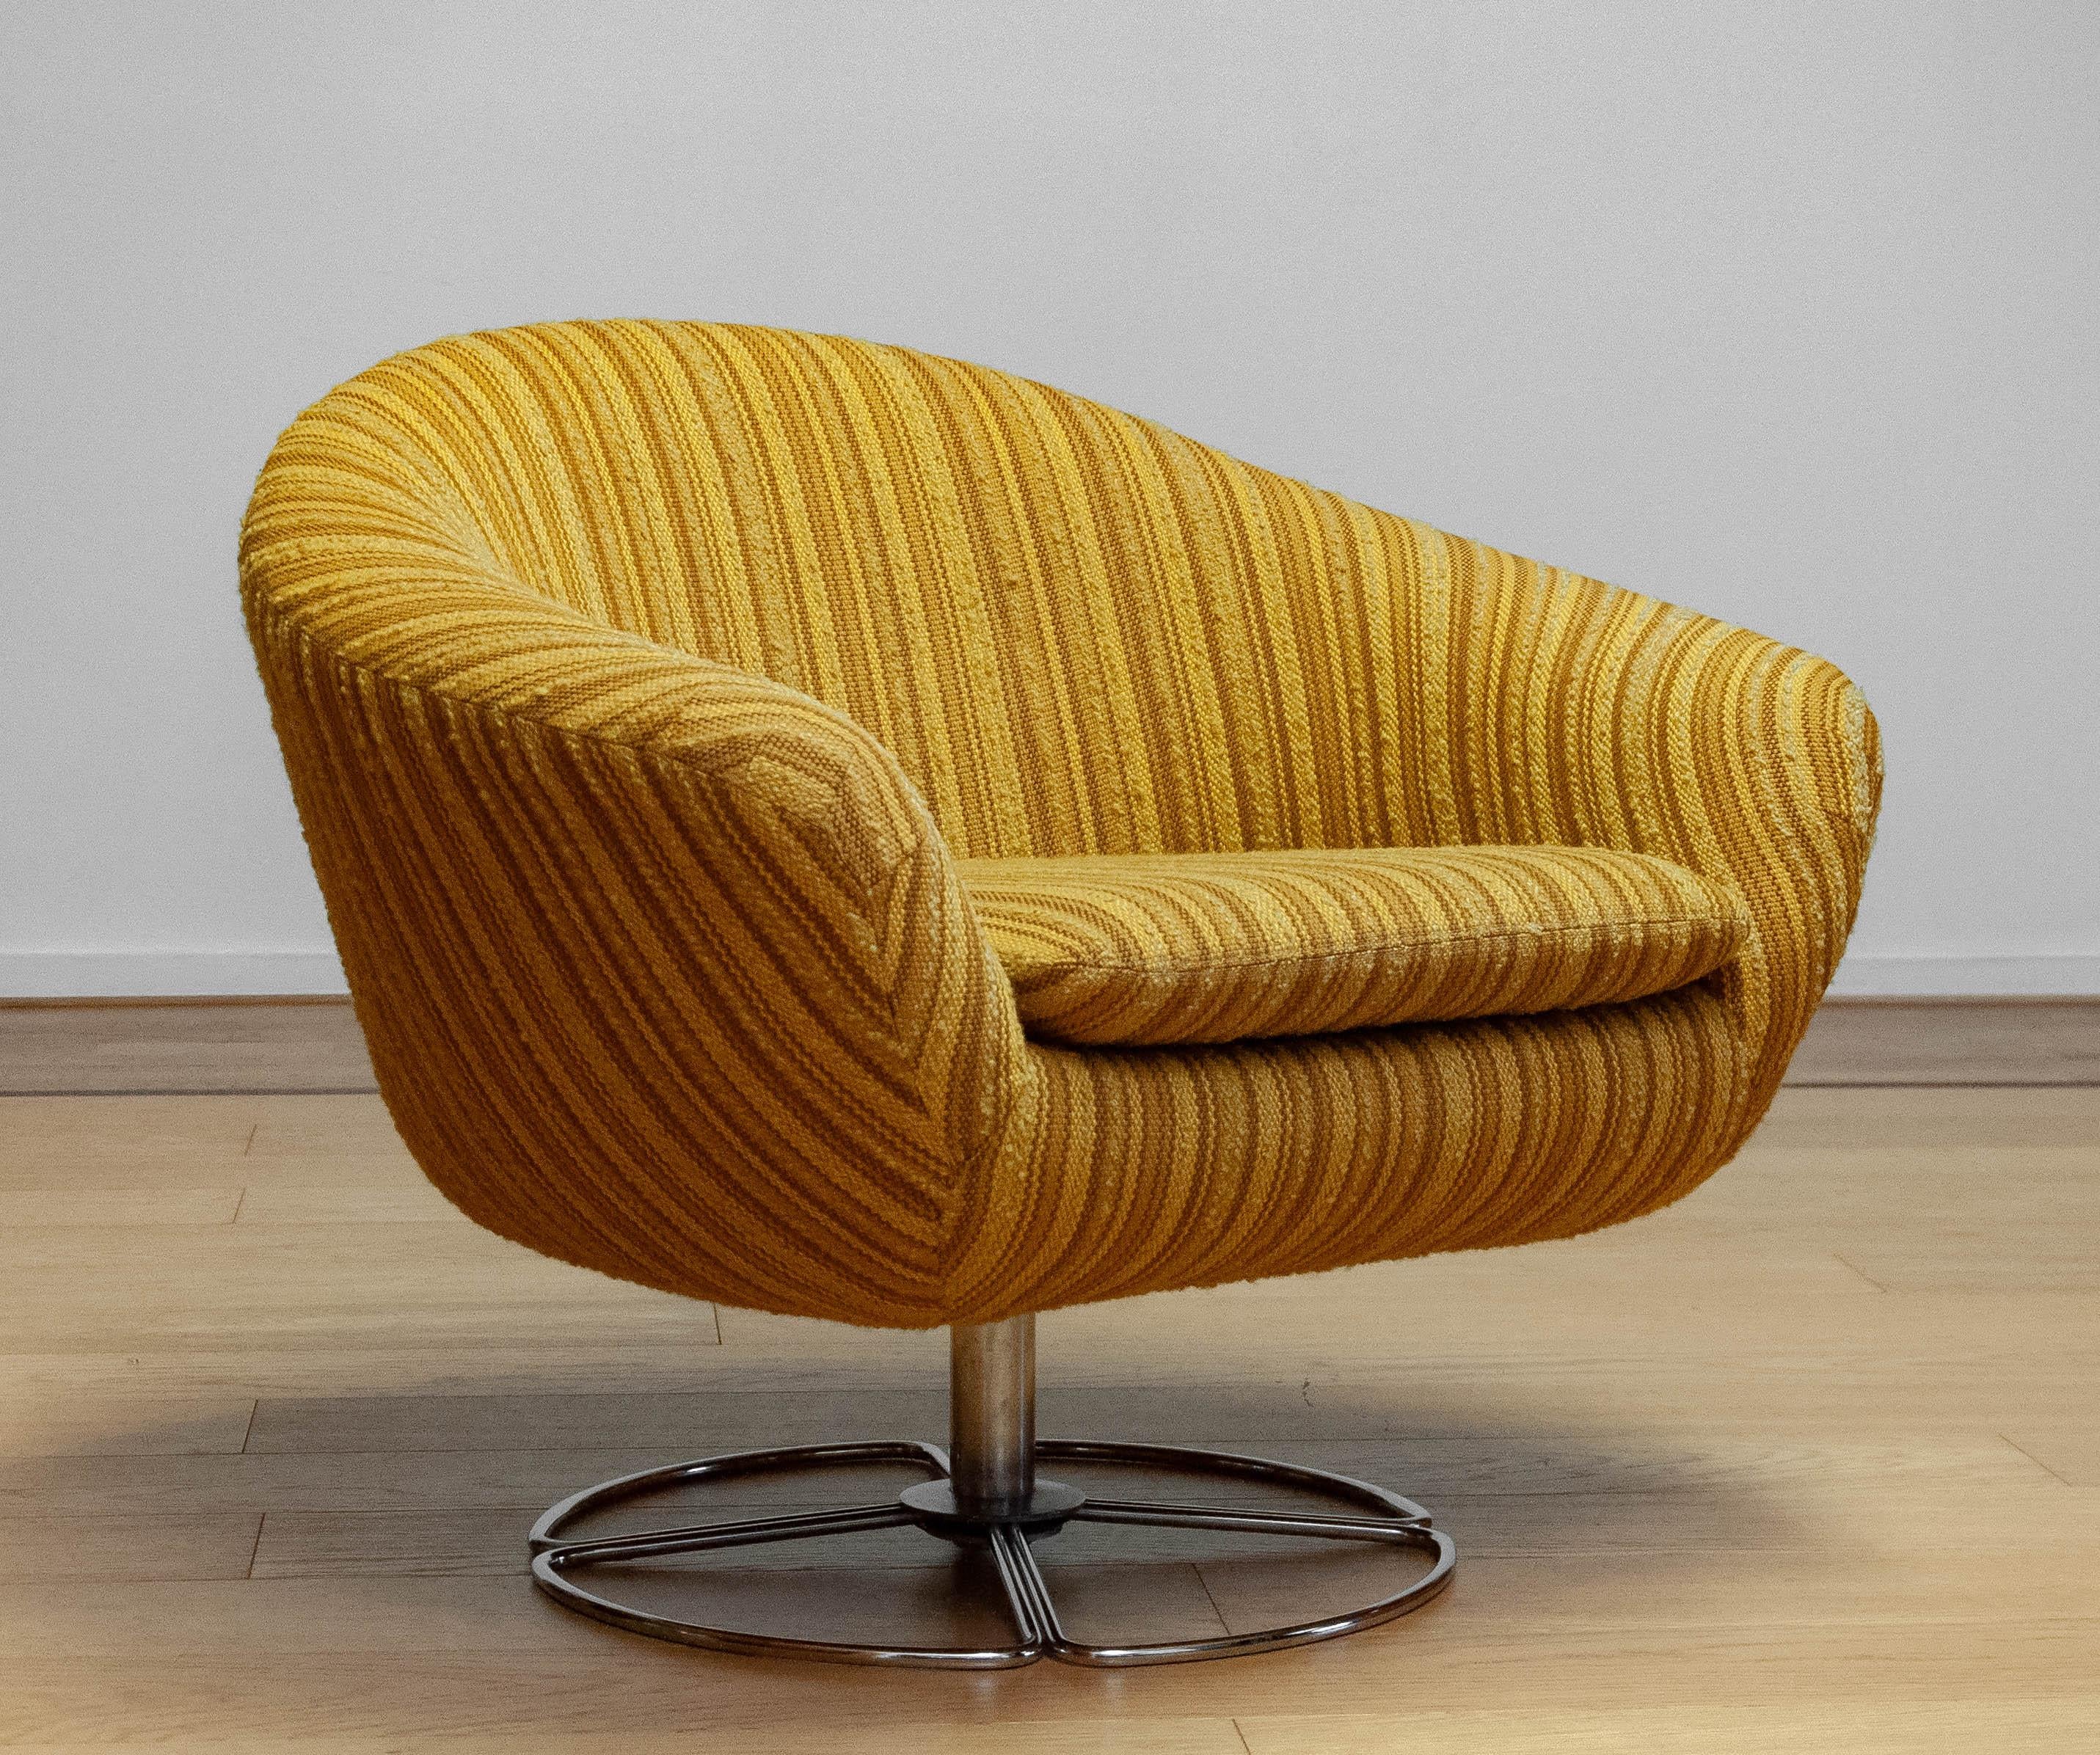 Magnifique pod / chaise pivotante tapissée avec le tissu rayé jaune maïs d'origine. La chaise a été fabriquée dans les années 1960 par le fabricant suédois 